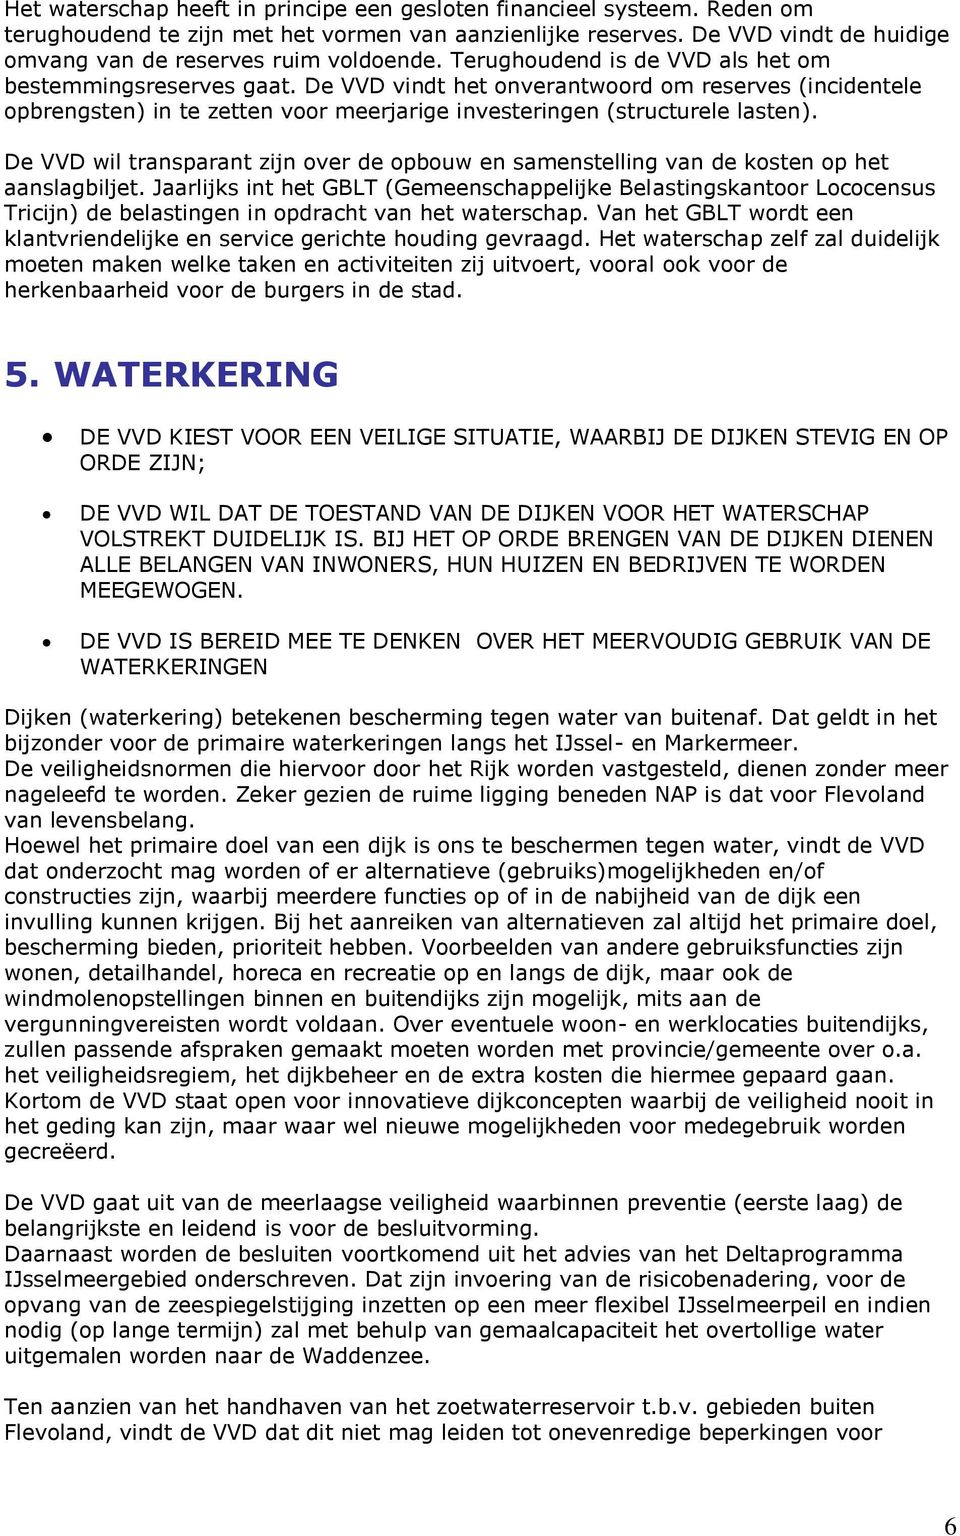 De VVD wil transparant zijn over de opbouw en samenstelling van de kosten op het aanslagbiljet.